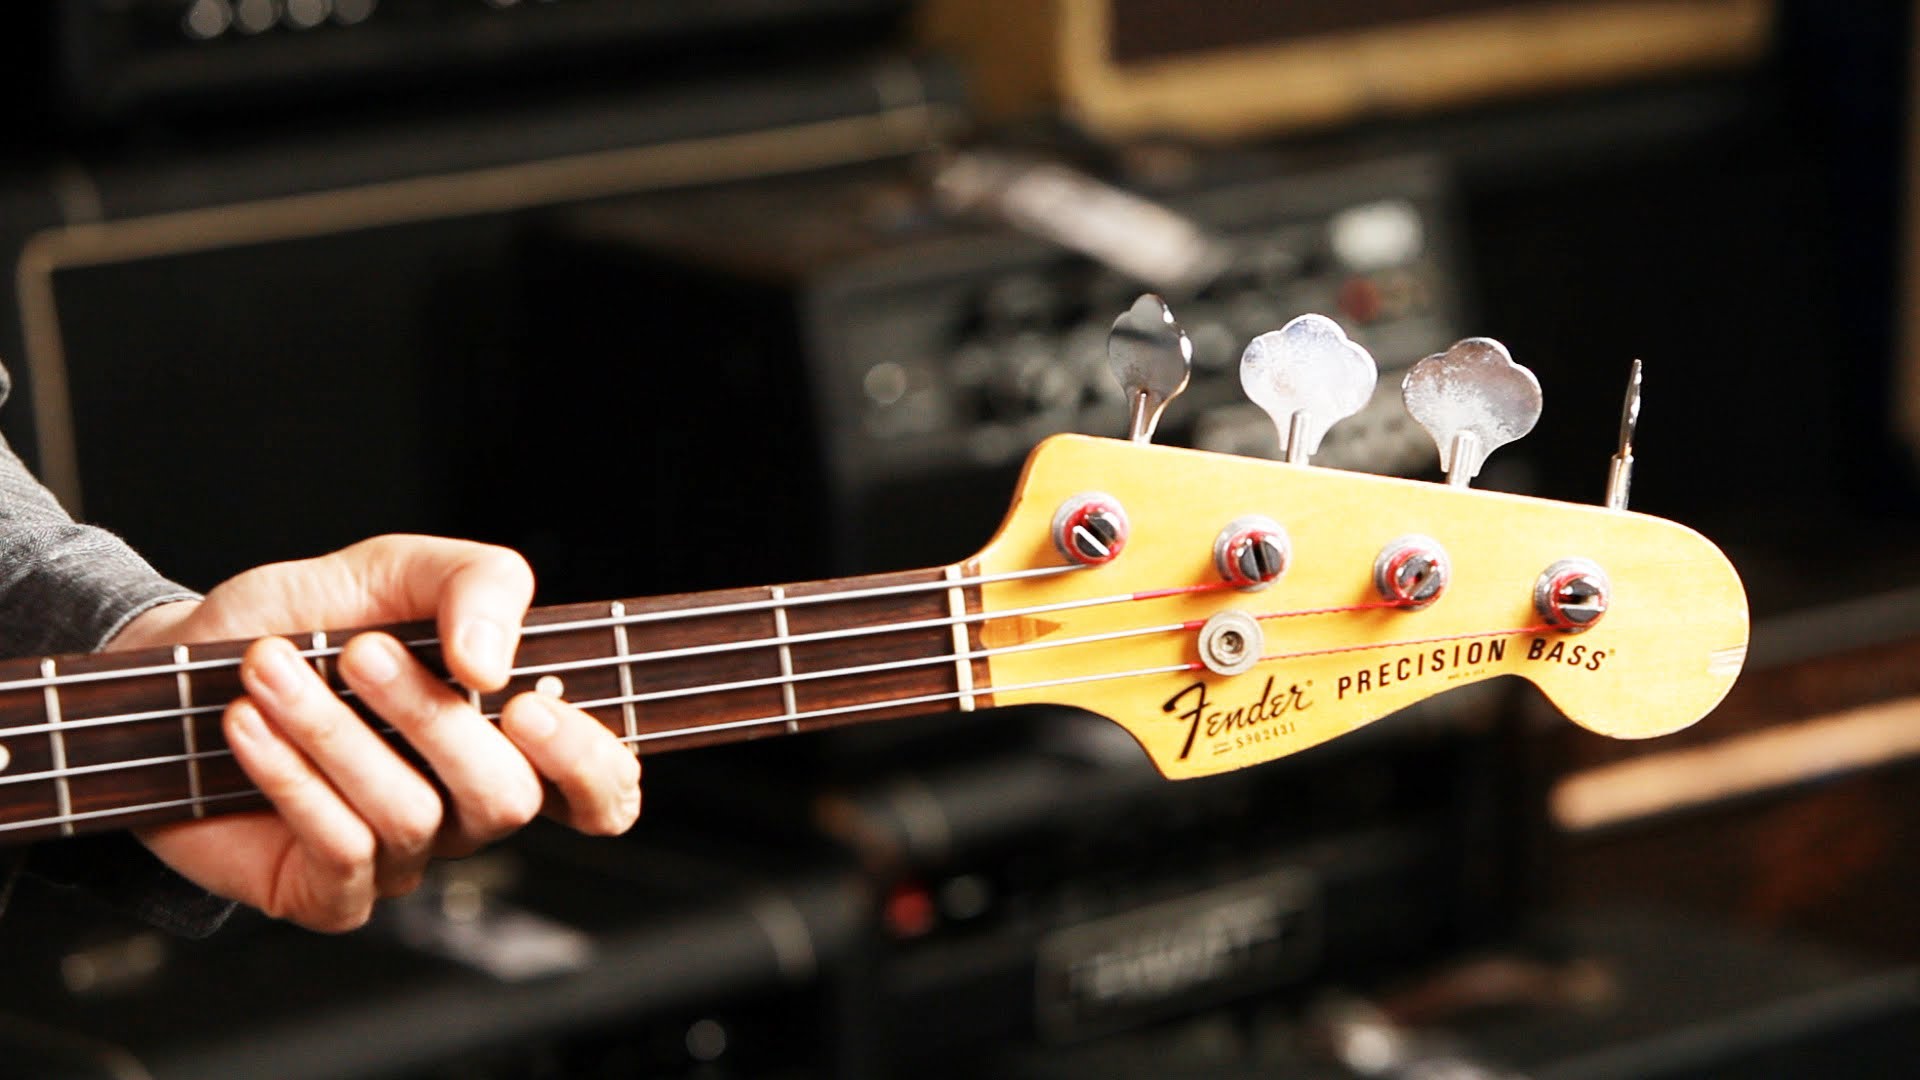 Fender Precision Bass Guitar Basics - Precision Bass Fender Bass Guitar - HD Wallpaper 